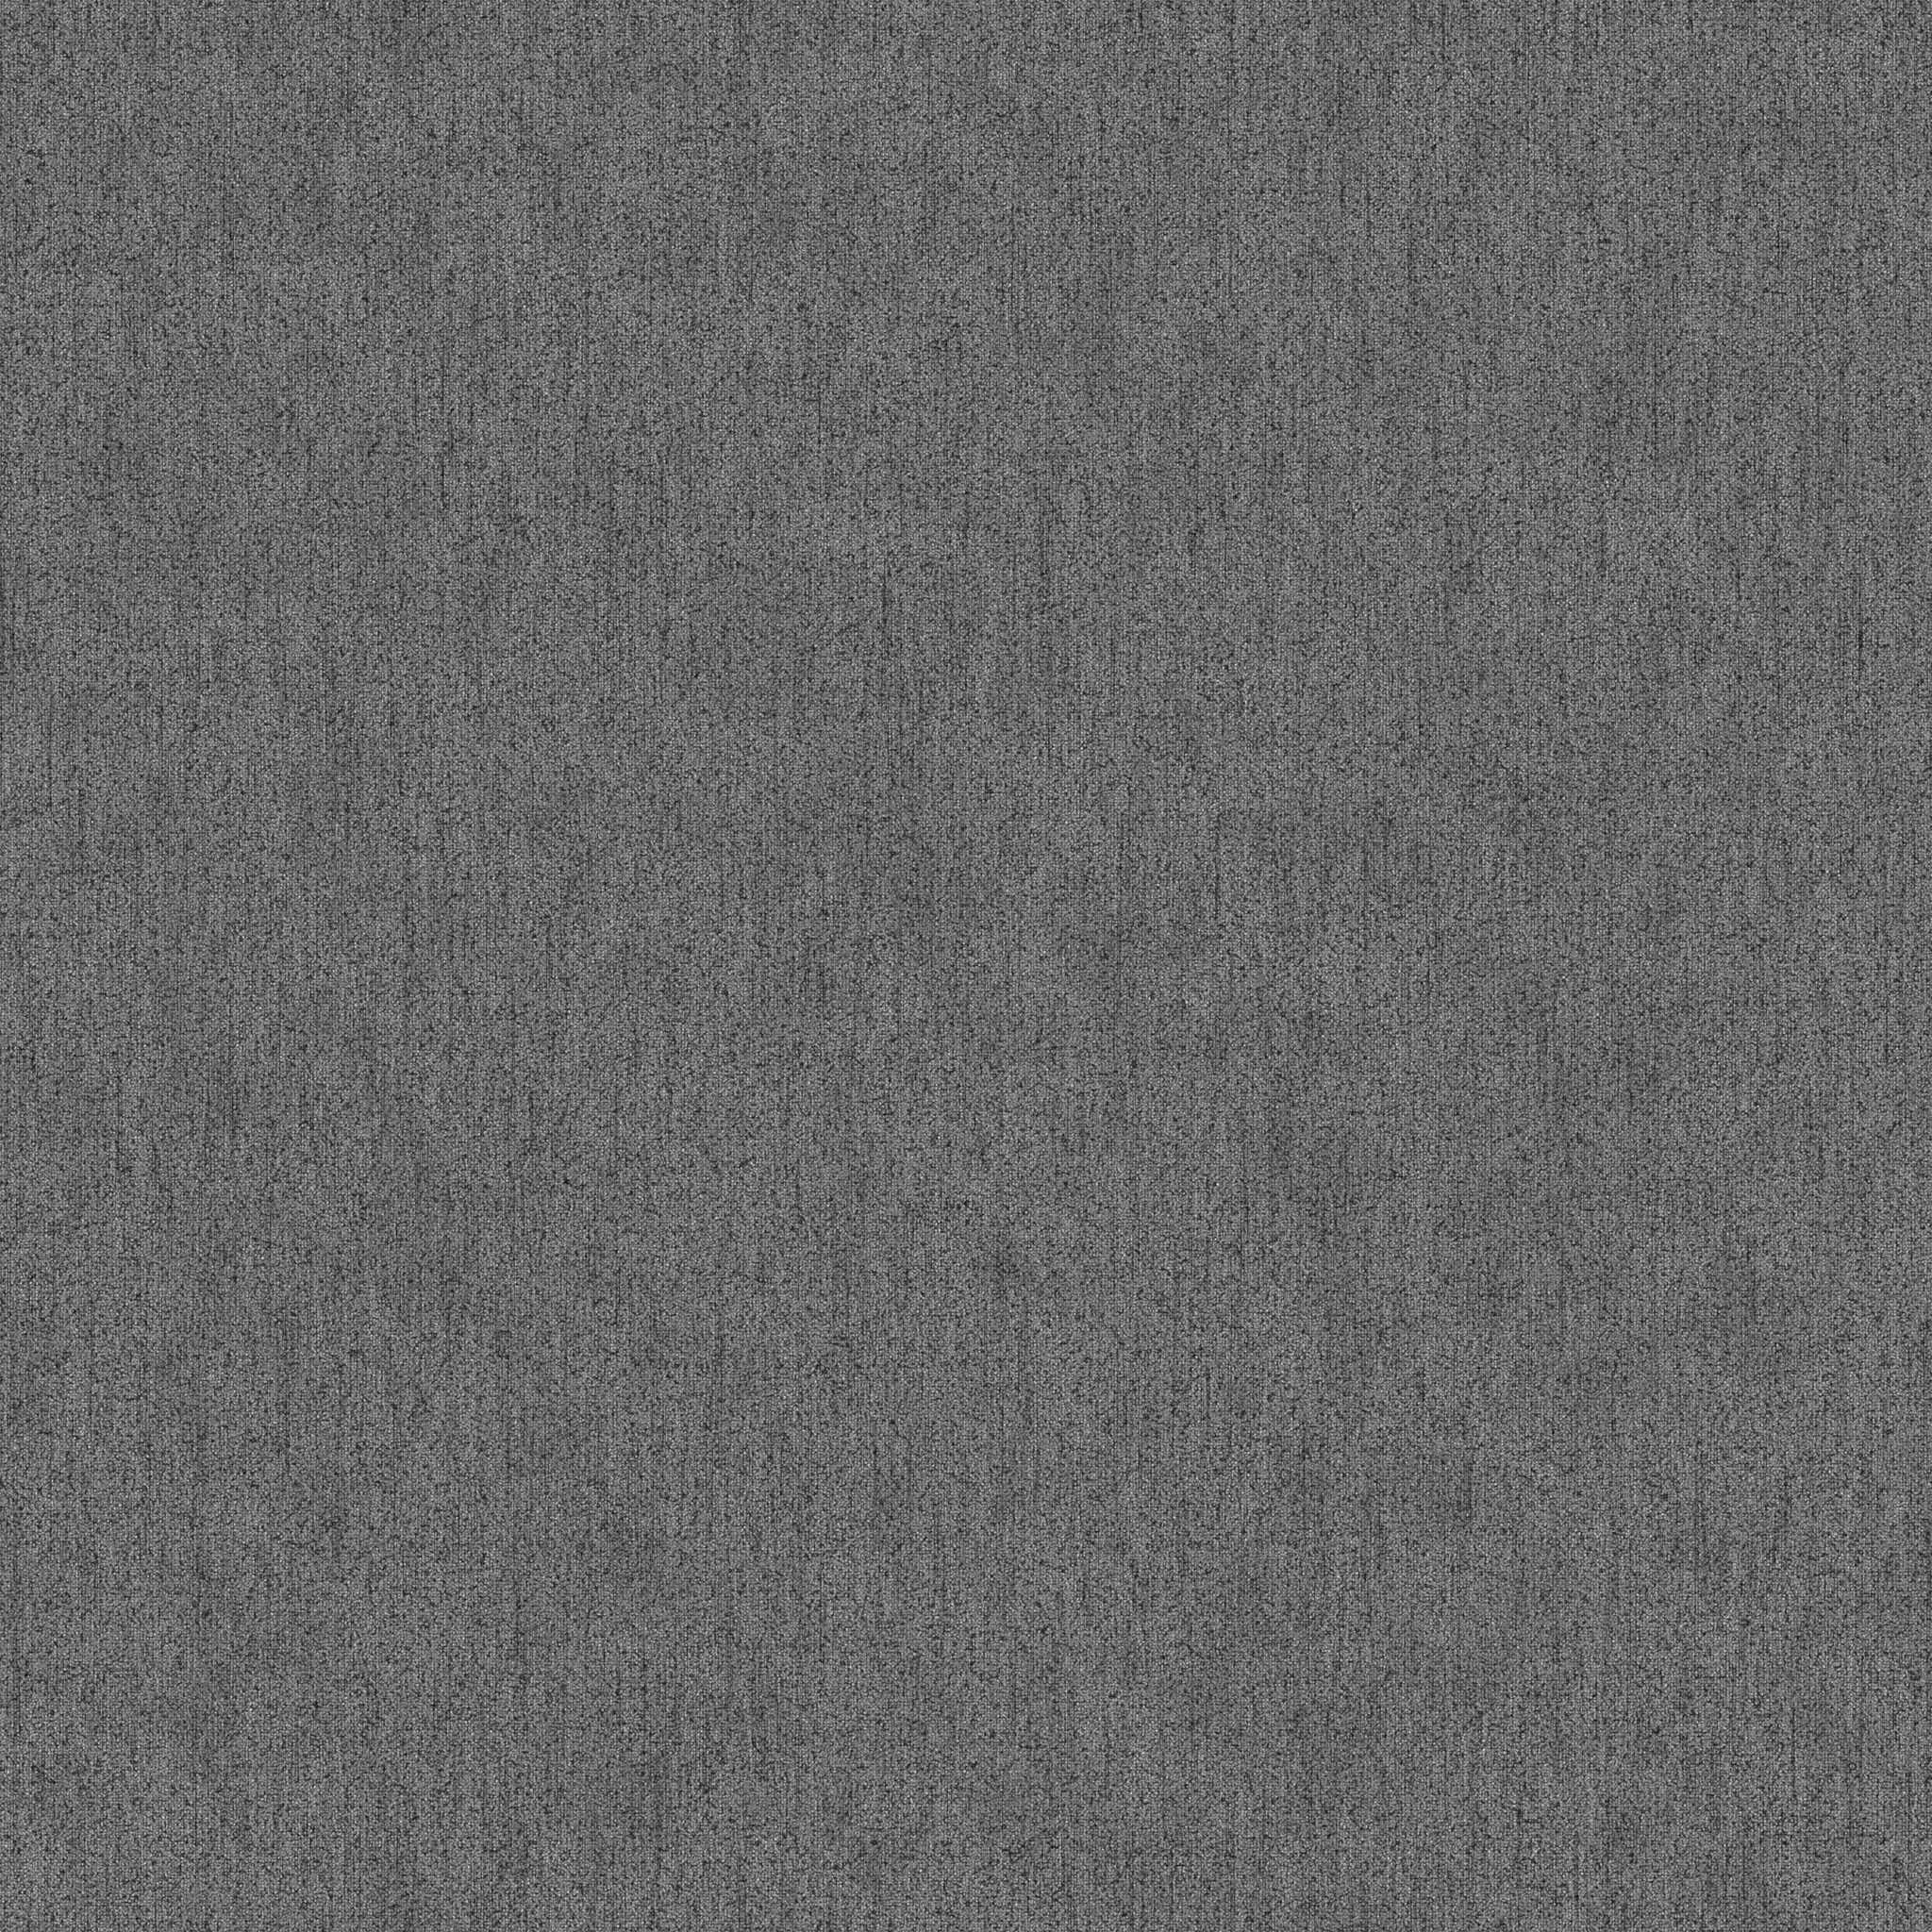 黑白地毯布料置换贴图 - 02